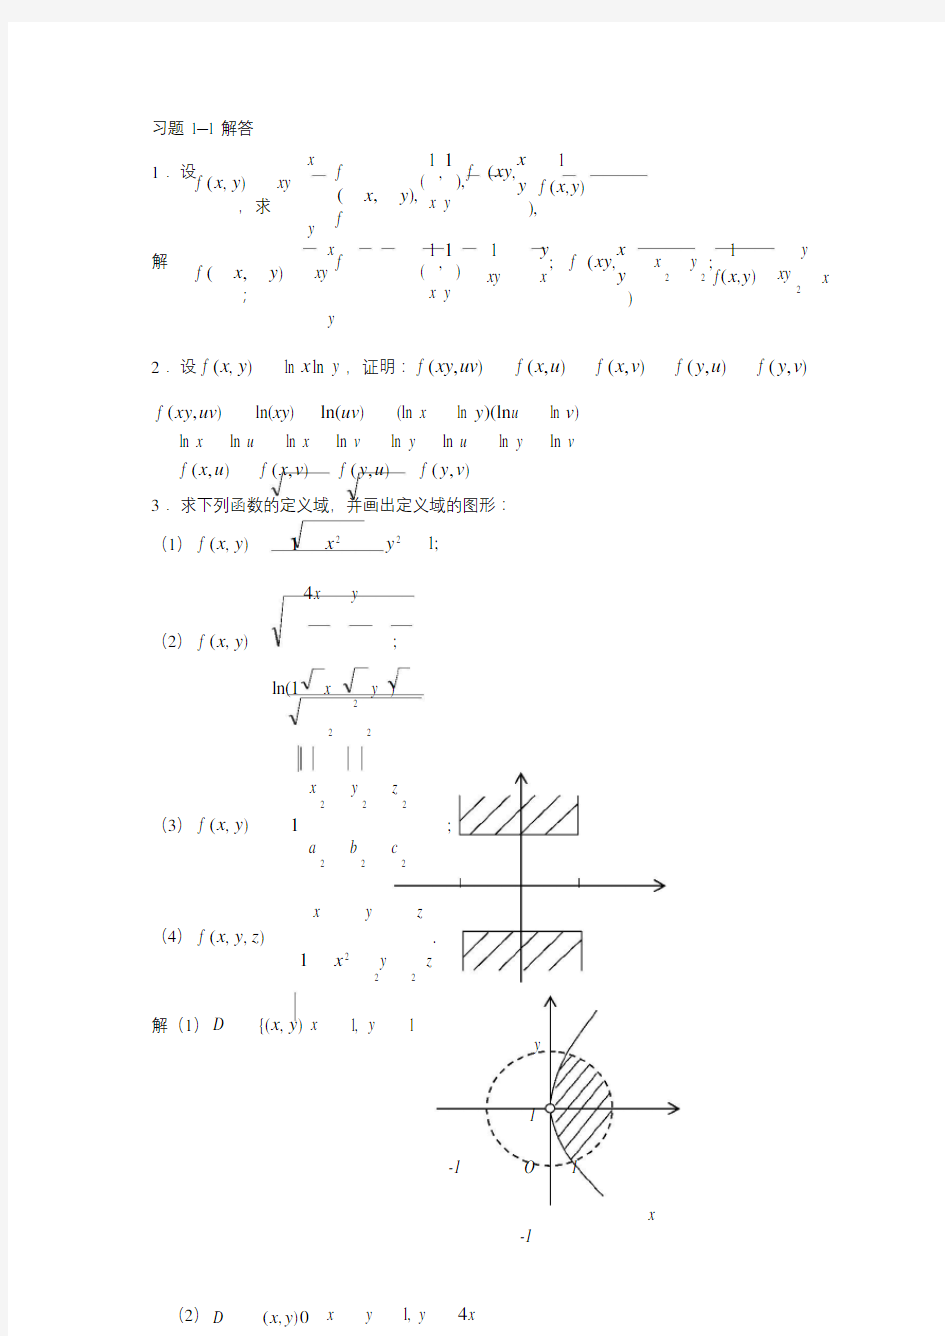 微积分(大学数学基础教程答案)大学数学基础教程(二)多元函数微积分习题解答